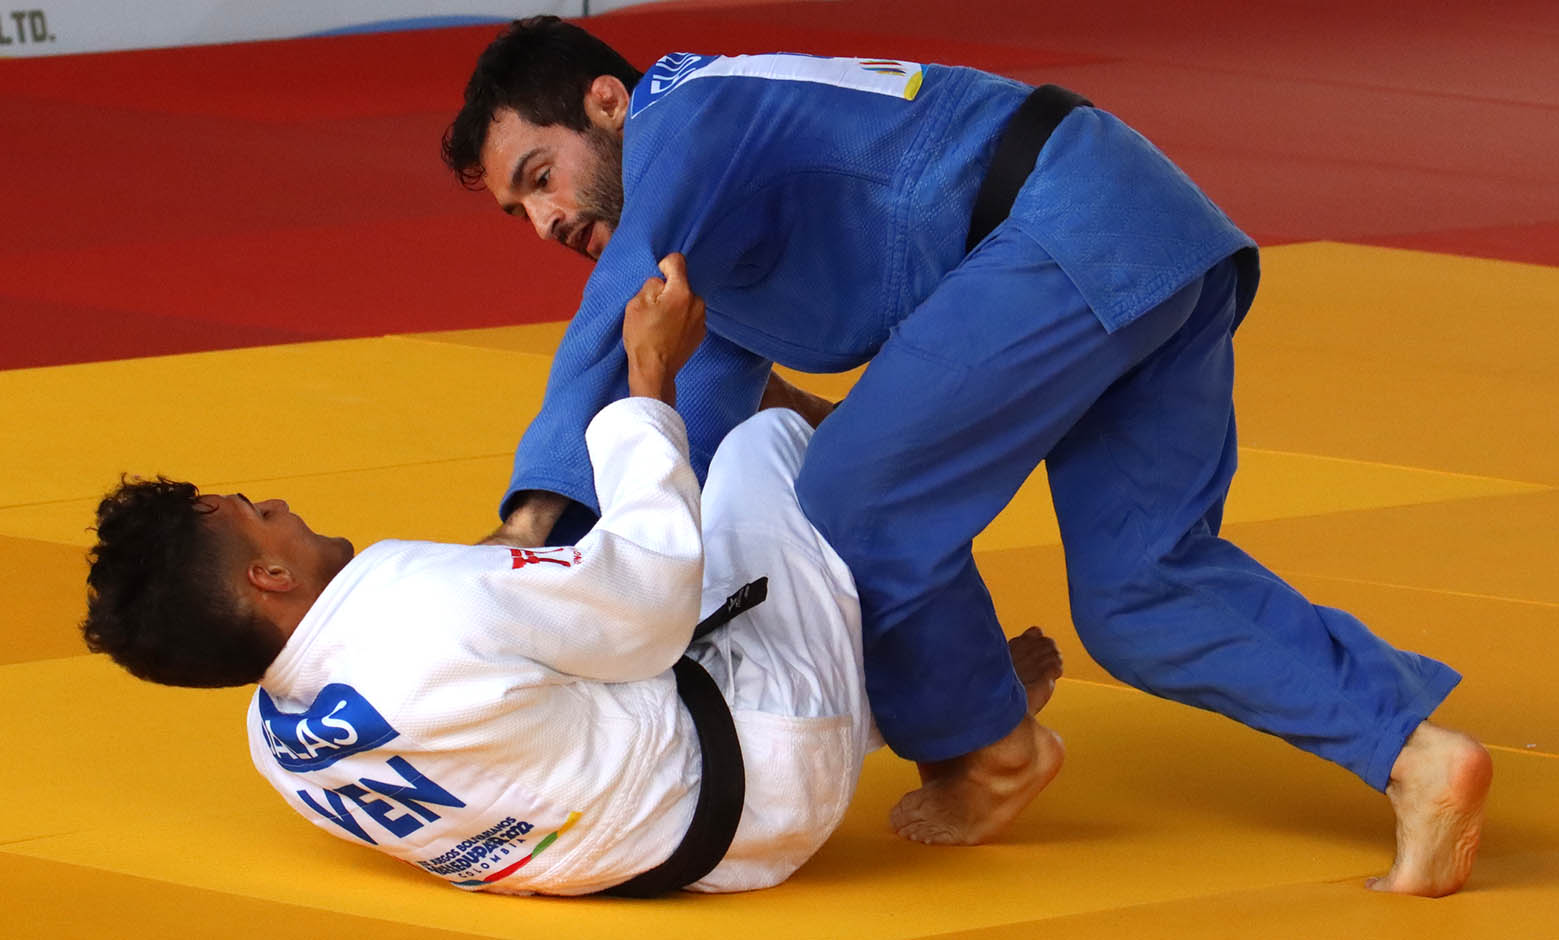 Atletas de judo de Bolívar podrían perderse los juegos deportivos del Alba  - Soy Nueva Prensa Digital